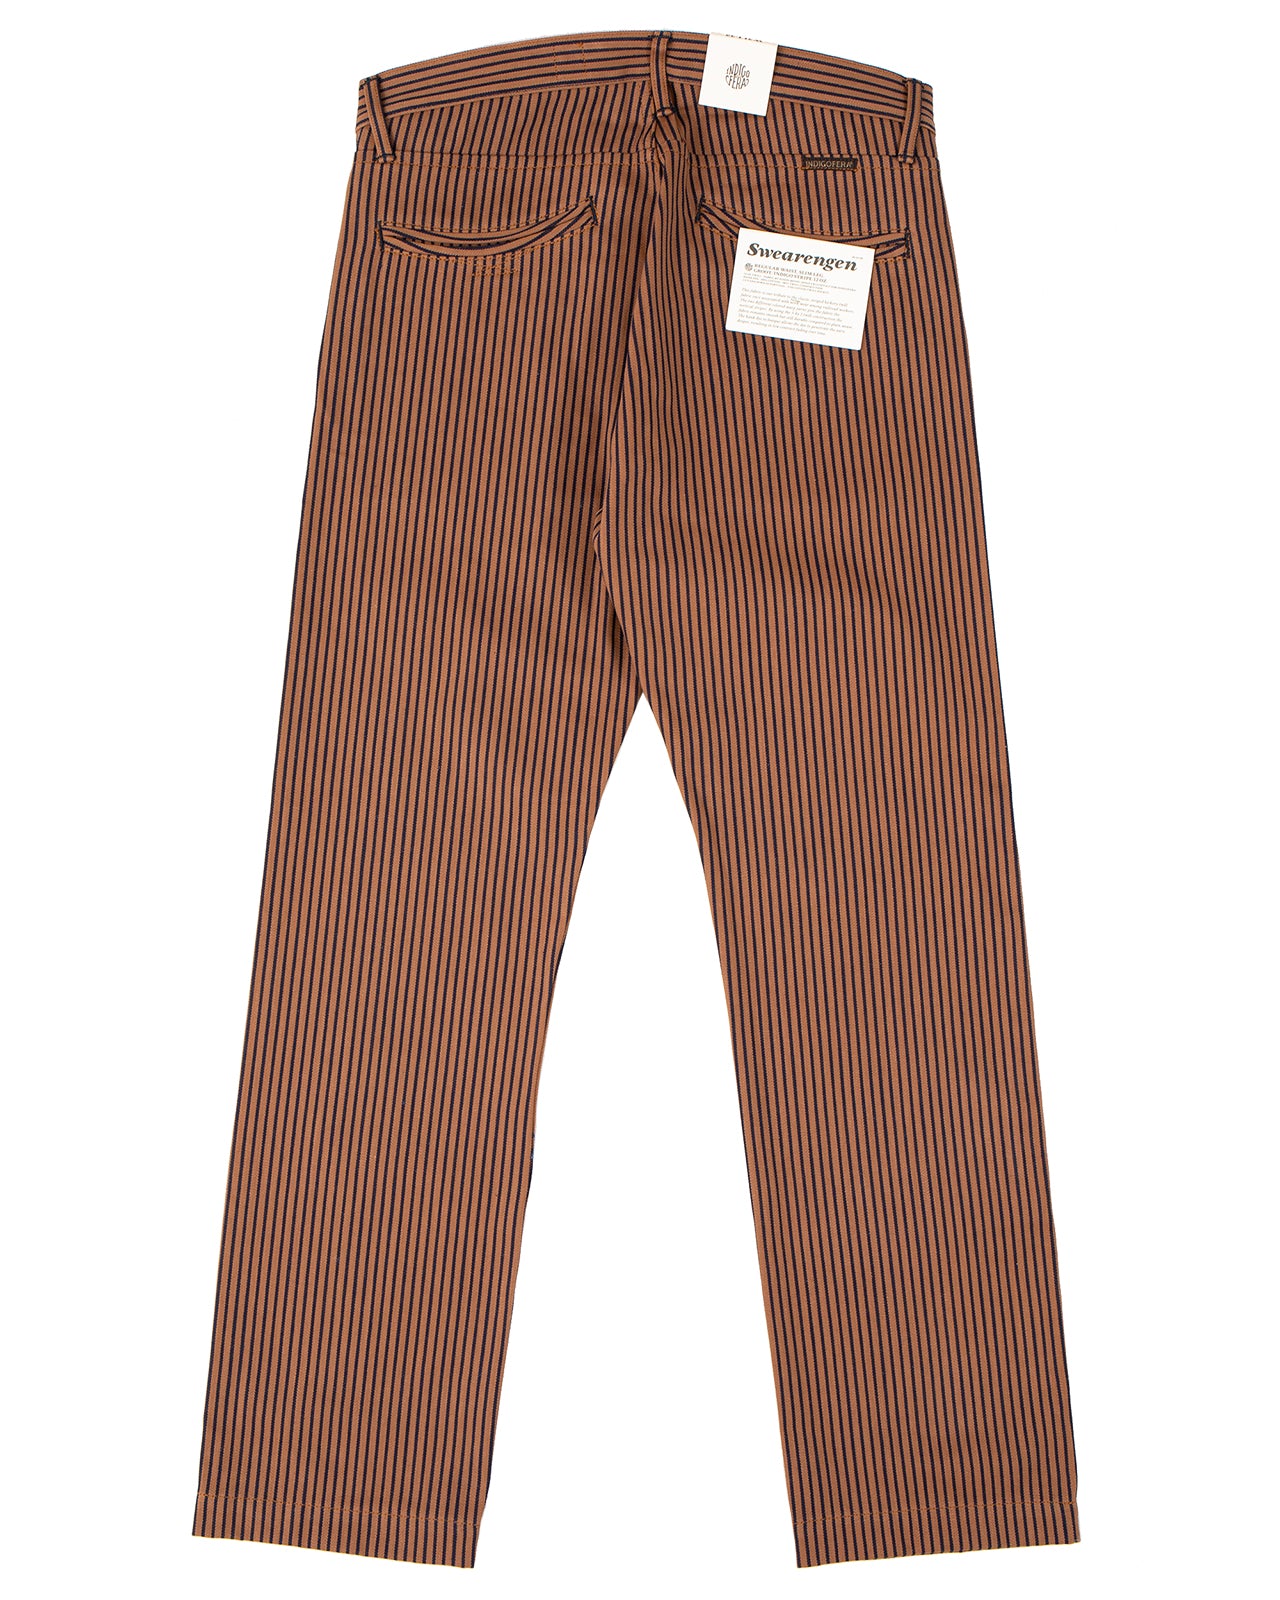 Indigofera Swearengen Pants, Groot / Indigo Stripe